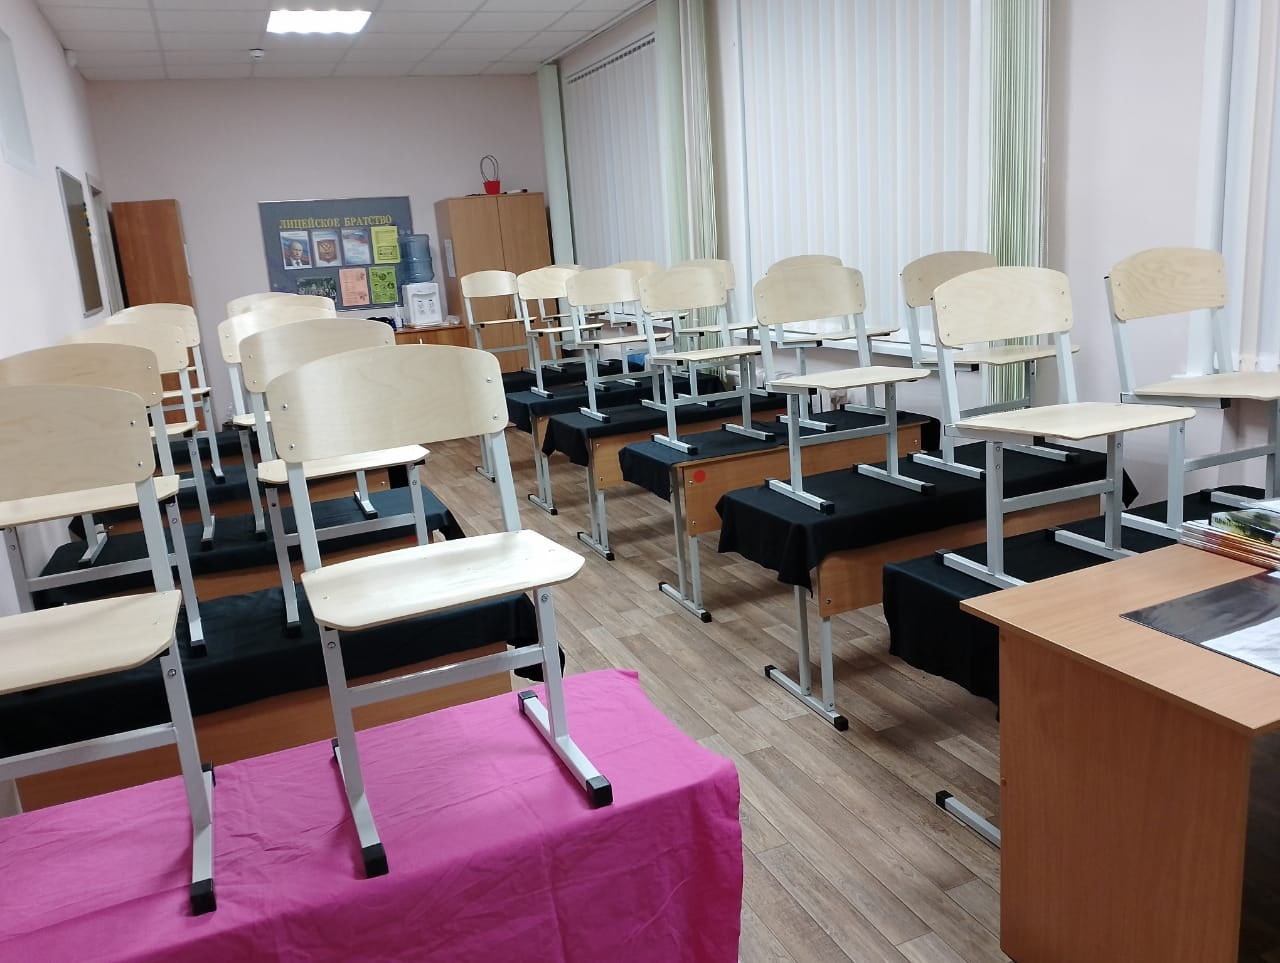  Учебный процесс в Пензенской области скорректируют из-за выборов президента РФ